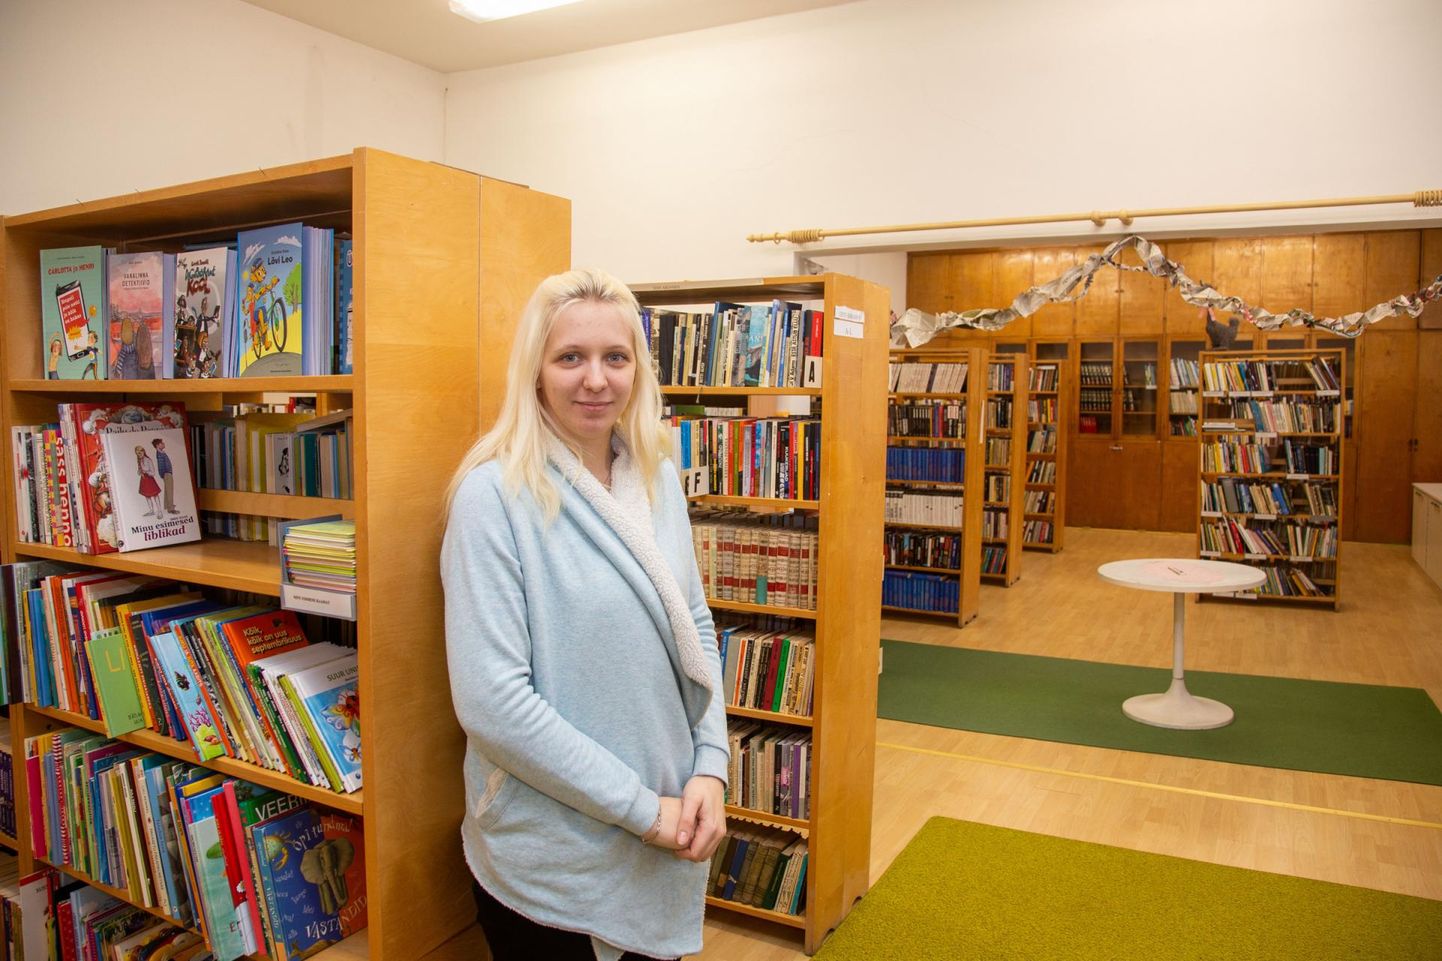 Kuigi nime poolest direktor, pole alates eelmise aasta sügisest Ambla raamatukogu ja Käravete raamatukogu juhtival Eleri Kangil ühtegi alluvat.